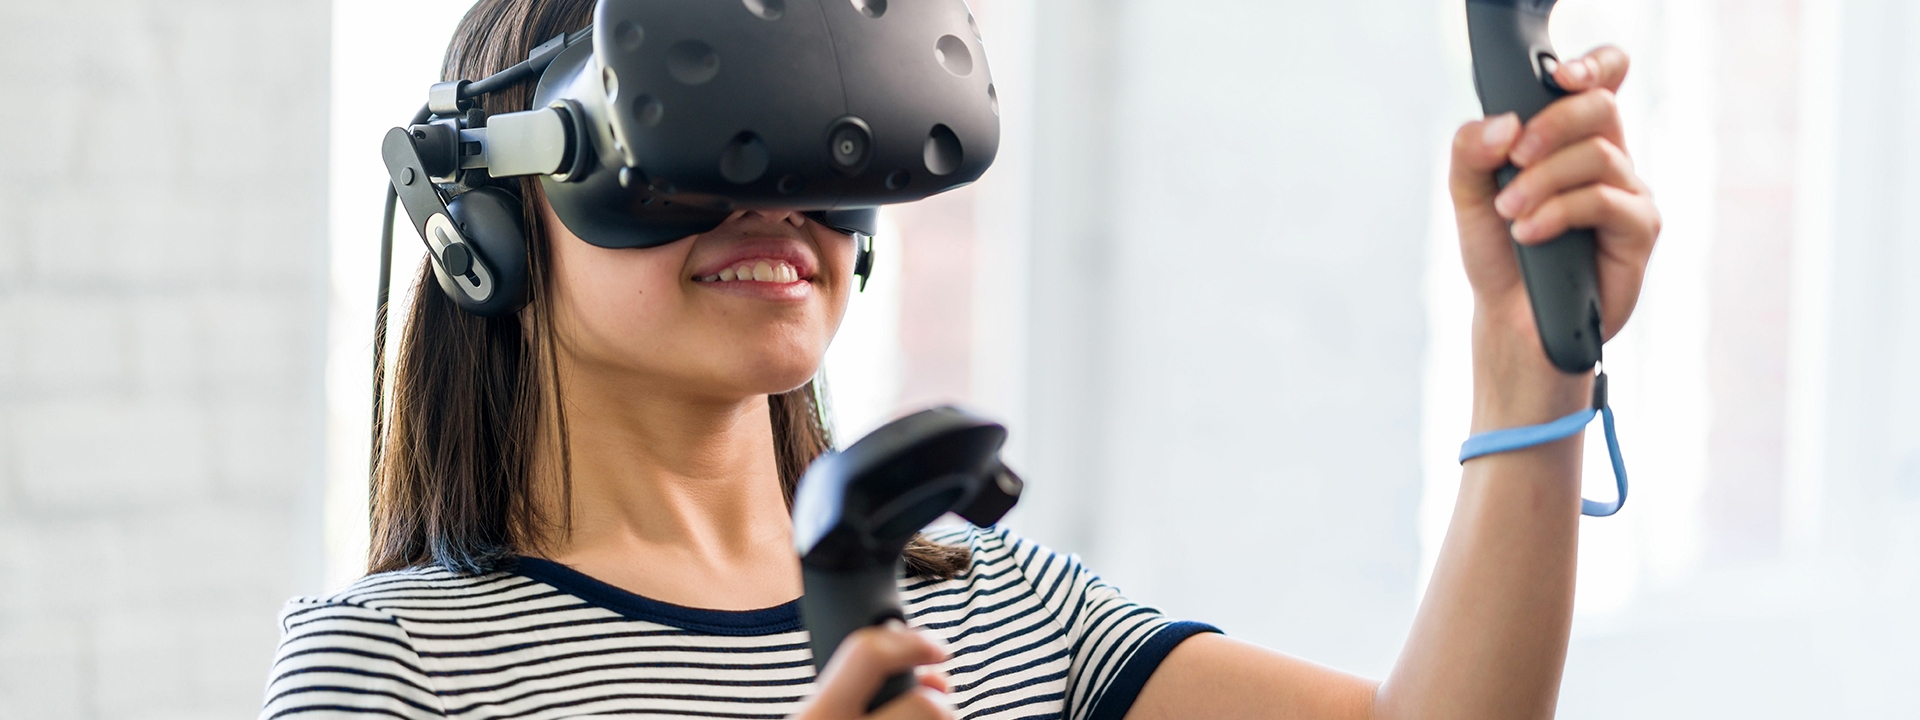 Eine Frau trägt eine VR-Brille und taucht in eine virtuelle Realität ein.